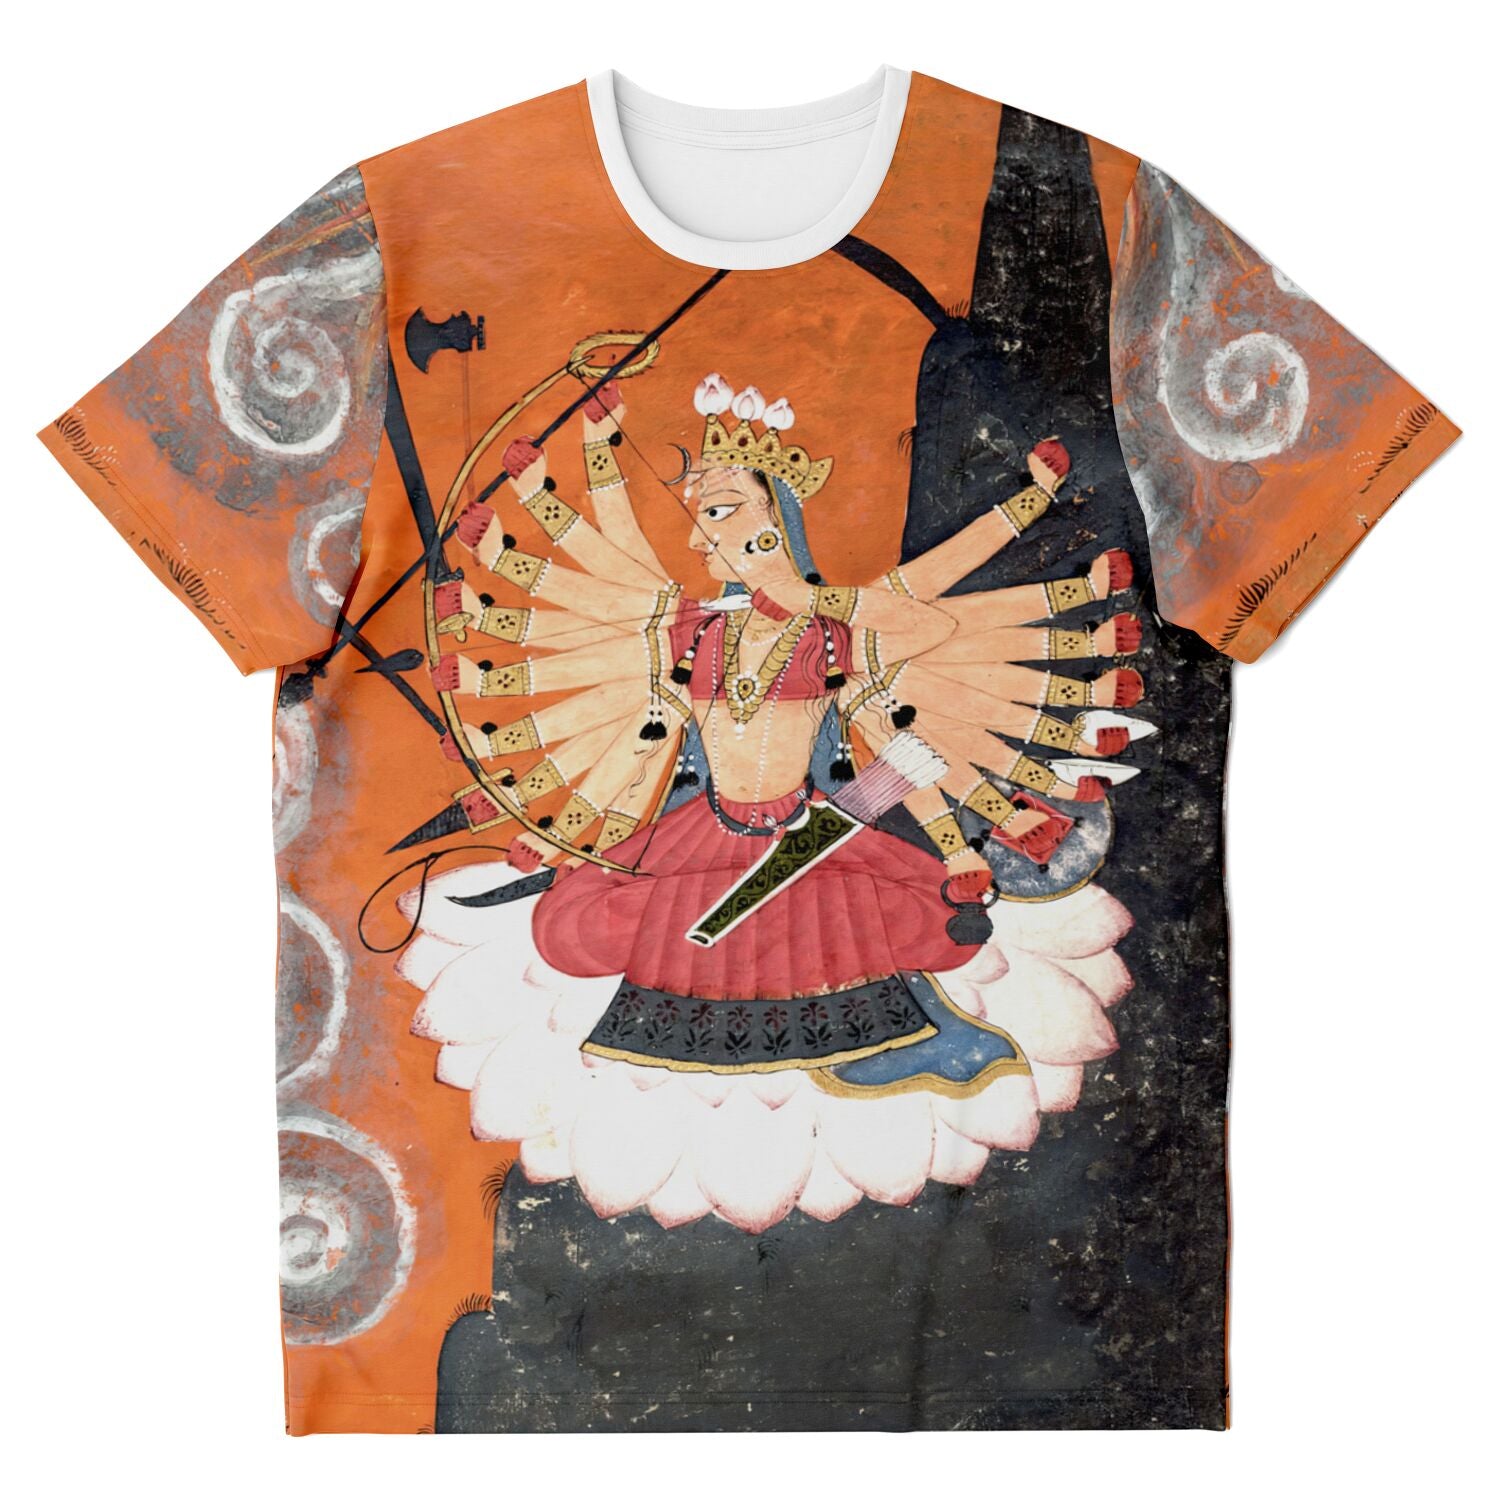 T-shirt XS Kali Shakti Durga Slaying the Buffalo Demon Asura, Mahishasura | Goddess Parvati Durga Devi Graphic Art T-Shirt